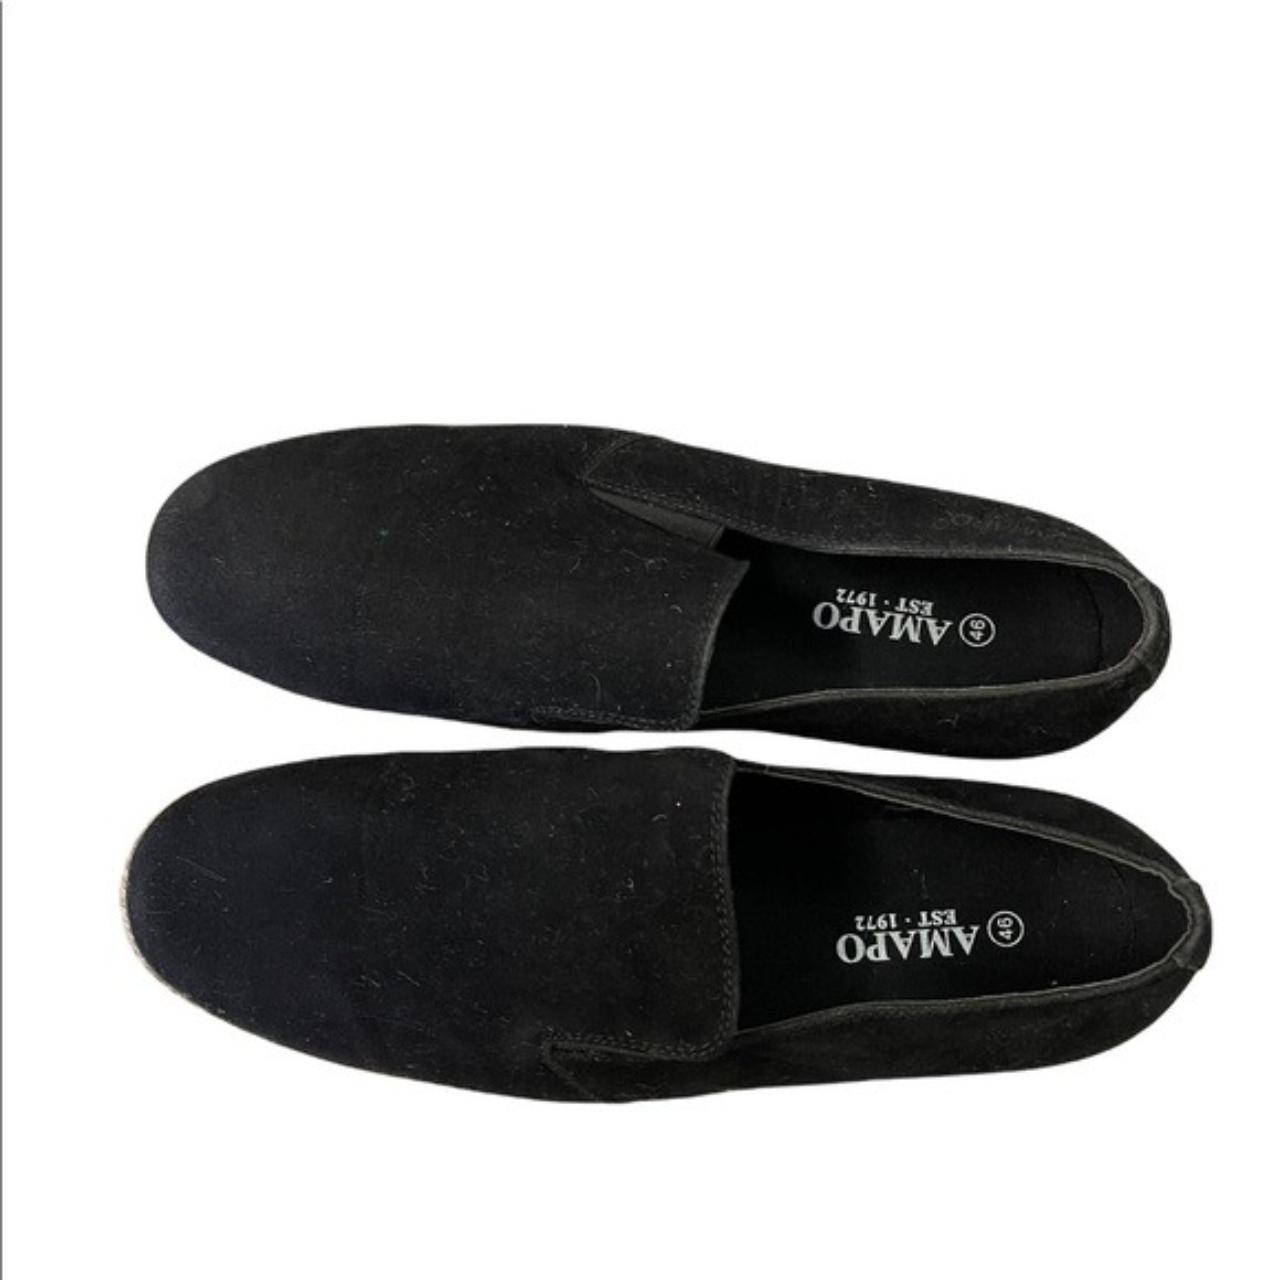 Product Image 4 - Amapo Men’s Shoes
Color : black
Size